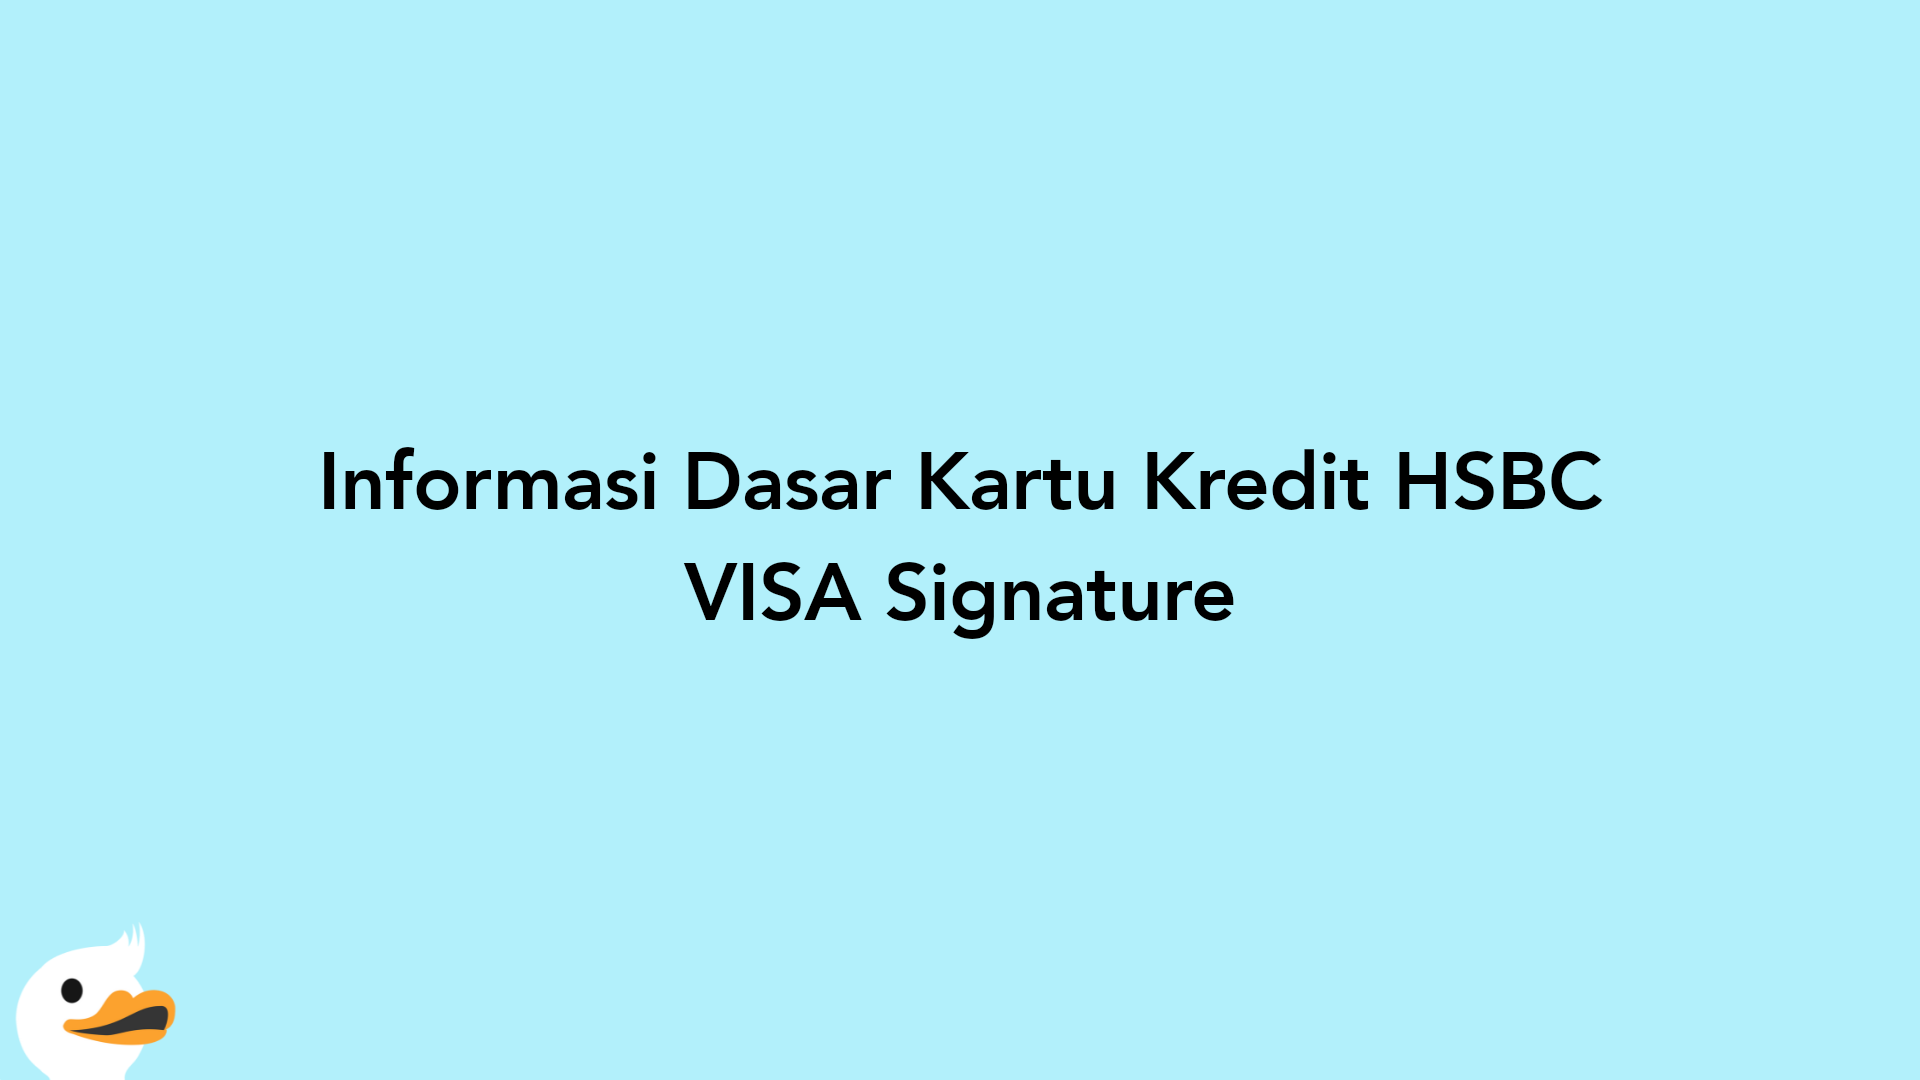 Informasi Dasar Kartu Kredit HSBC VISA Signature